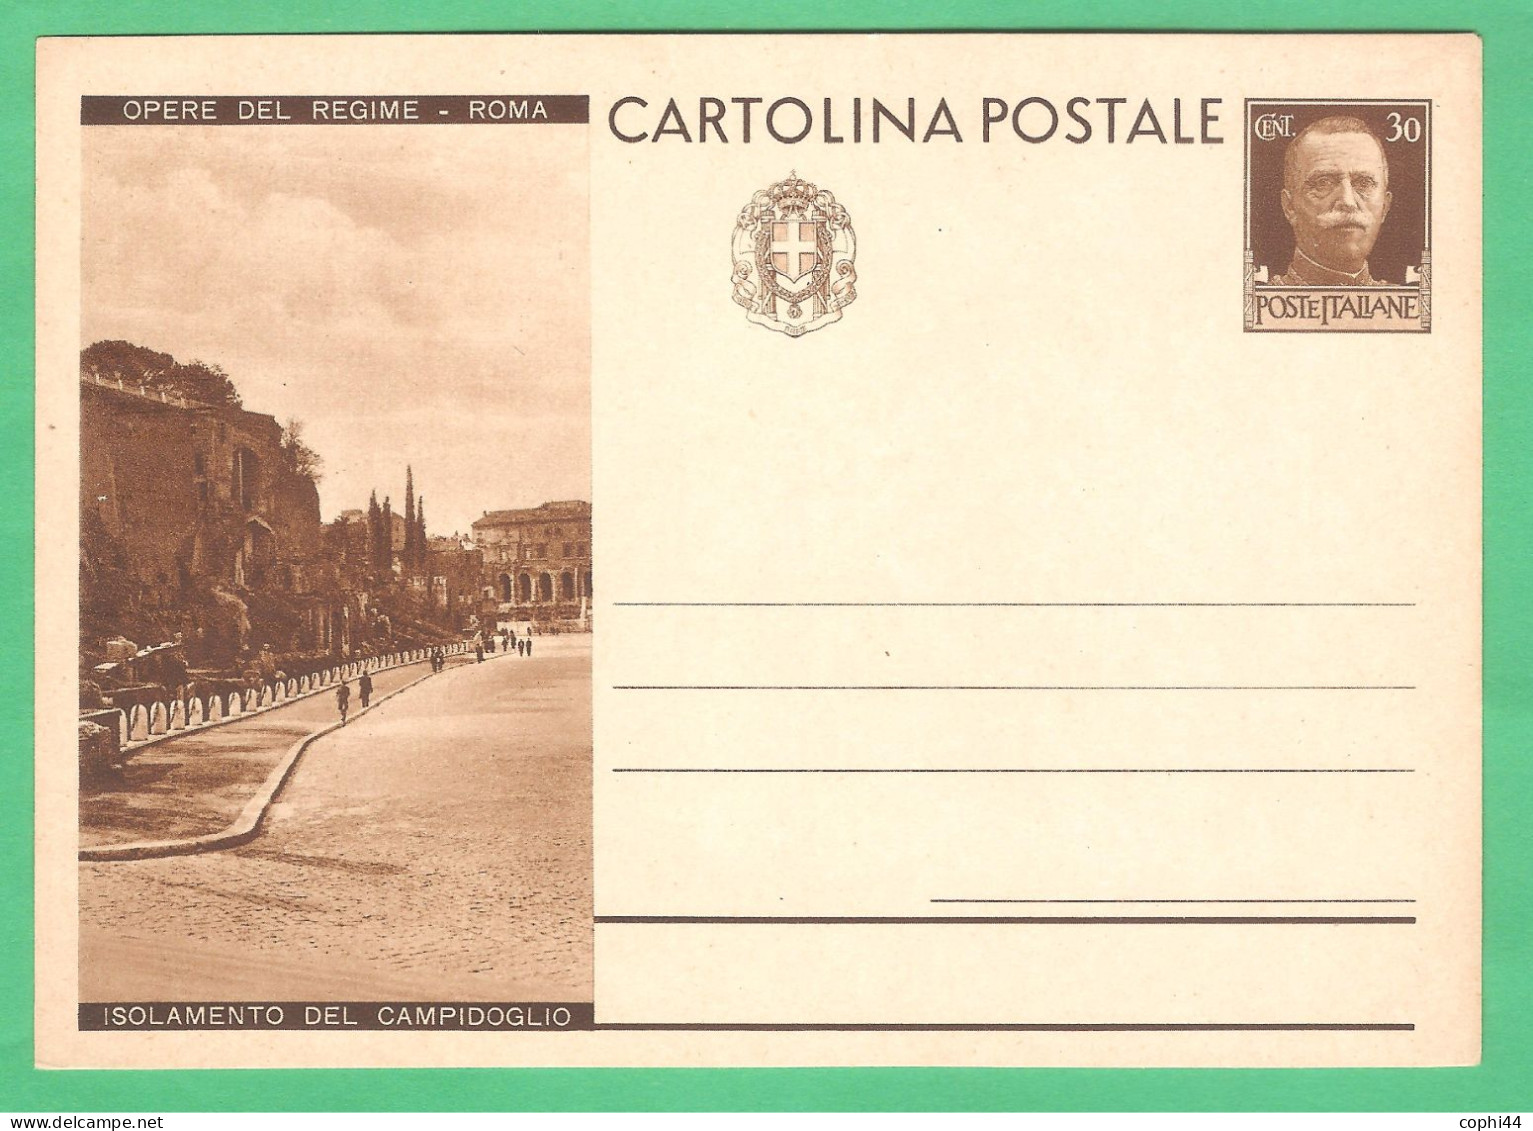 REGNO D'ITALIA 1932 CARTOLINA POSTALE VEIII OPERE DEL REGIME ISOLAMENTO CAMPIDOGLIO 30c Bruno (FILAGRANO C72-9) NUOVA - Interi Postali